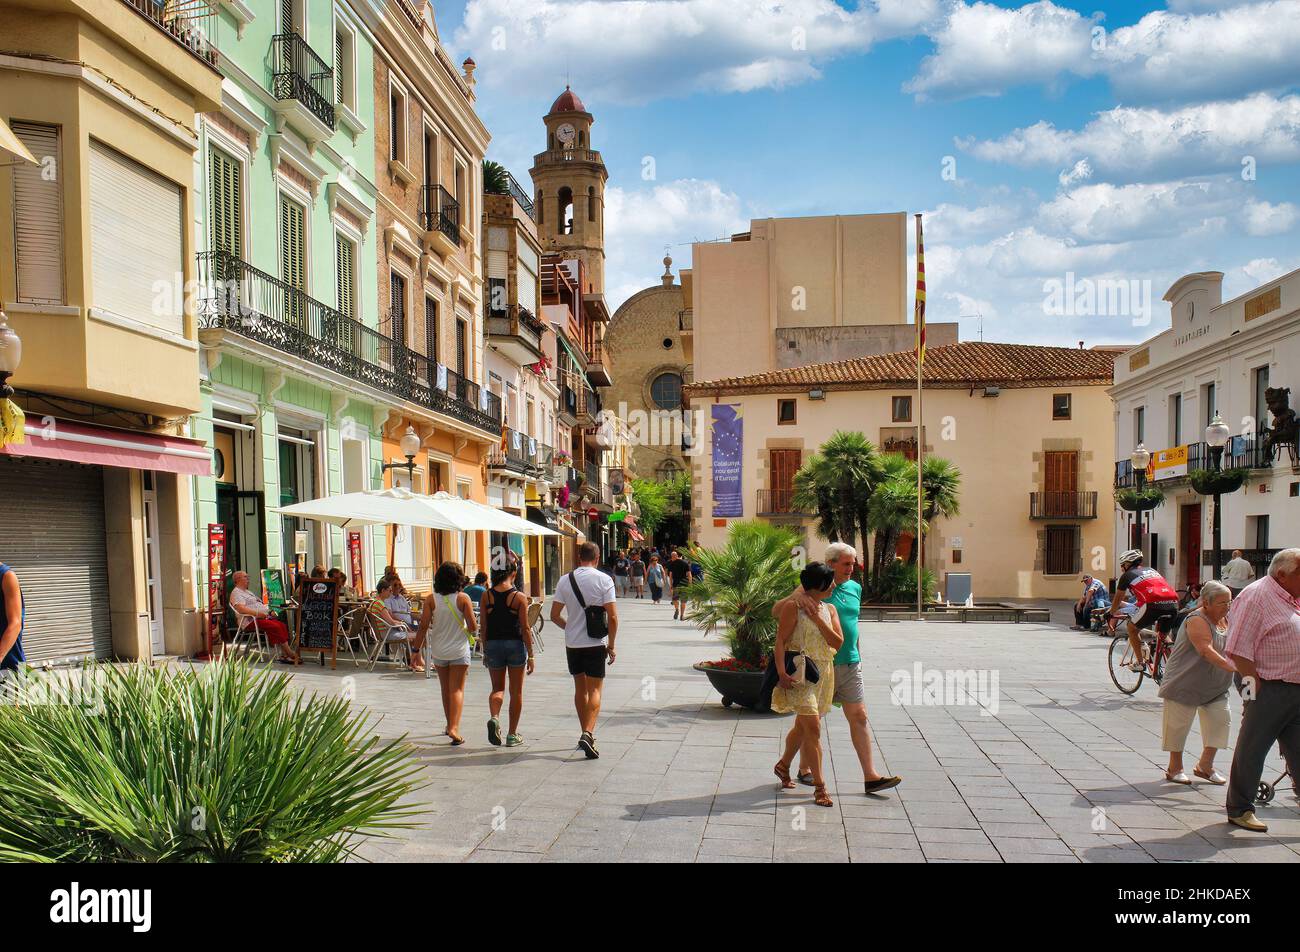 Il centro urbano della bellissima città turistica di Calella, situata sulla Costa Brava, in provincia di Barcellona Foto Stock